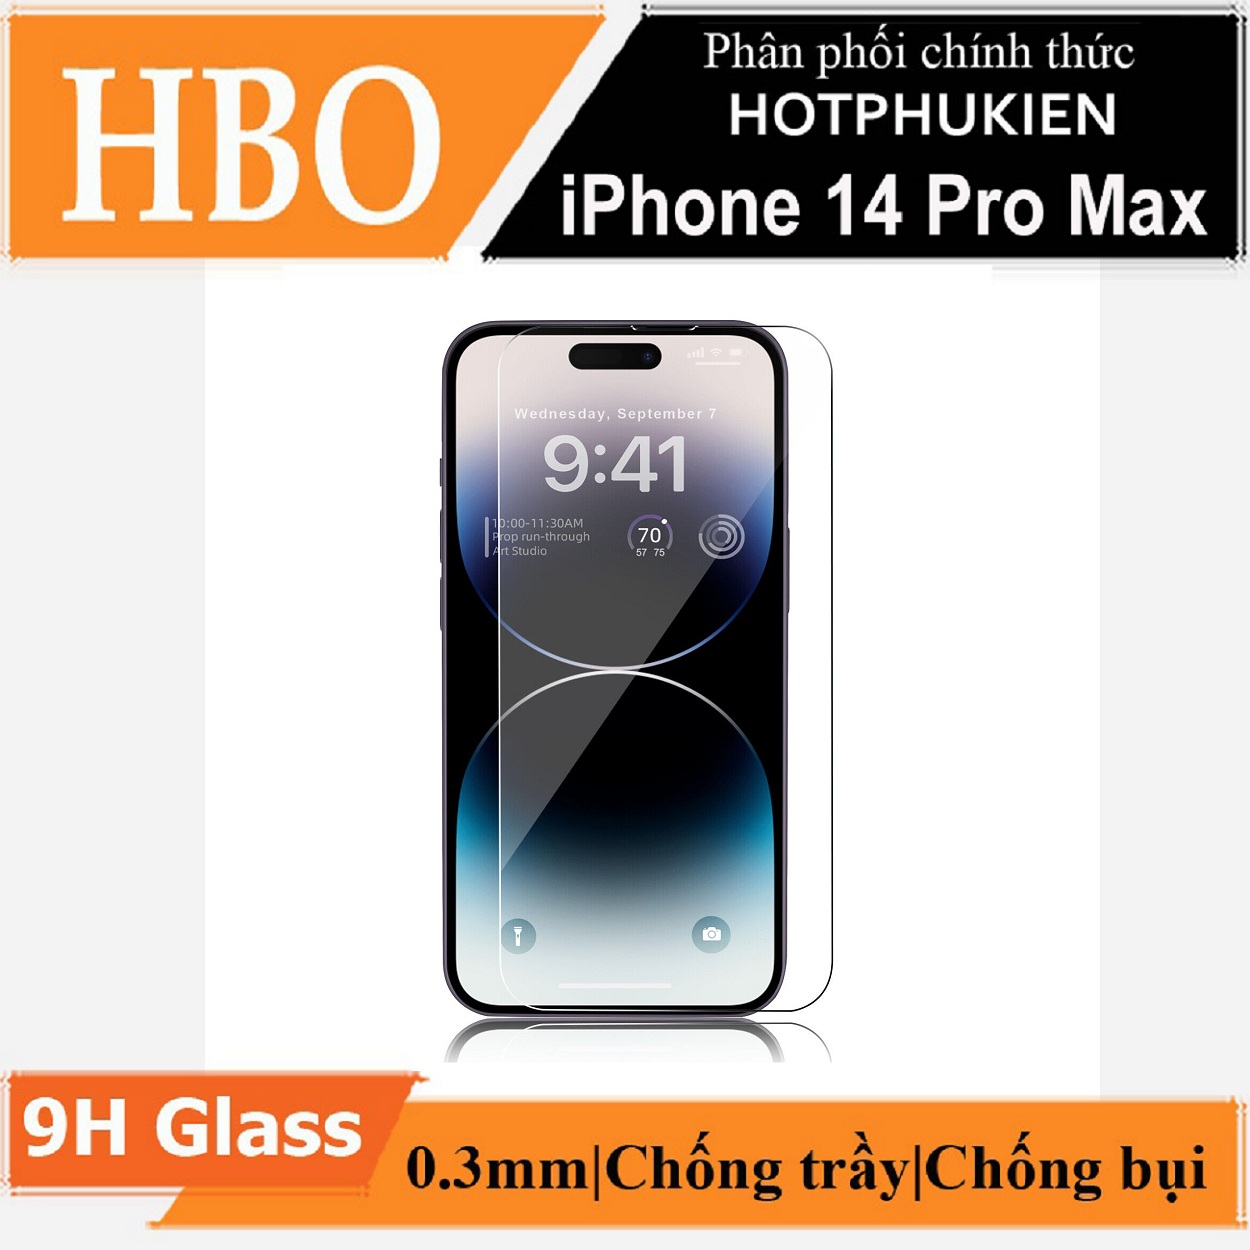 Miếng dán kính cường lực dành cho iPhone 14 Pro / 14 Pro Max hiệu HOTCASE HBO (độ cứng 9H, mỏng 0.3mm, vát 2.5D, độ trong chuẩn HD) - hàng nhập khẩu